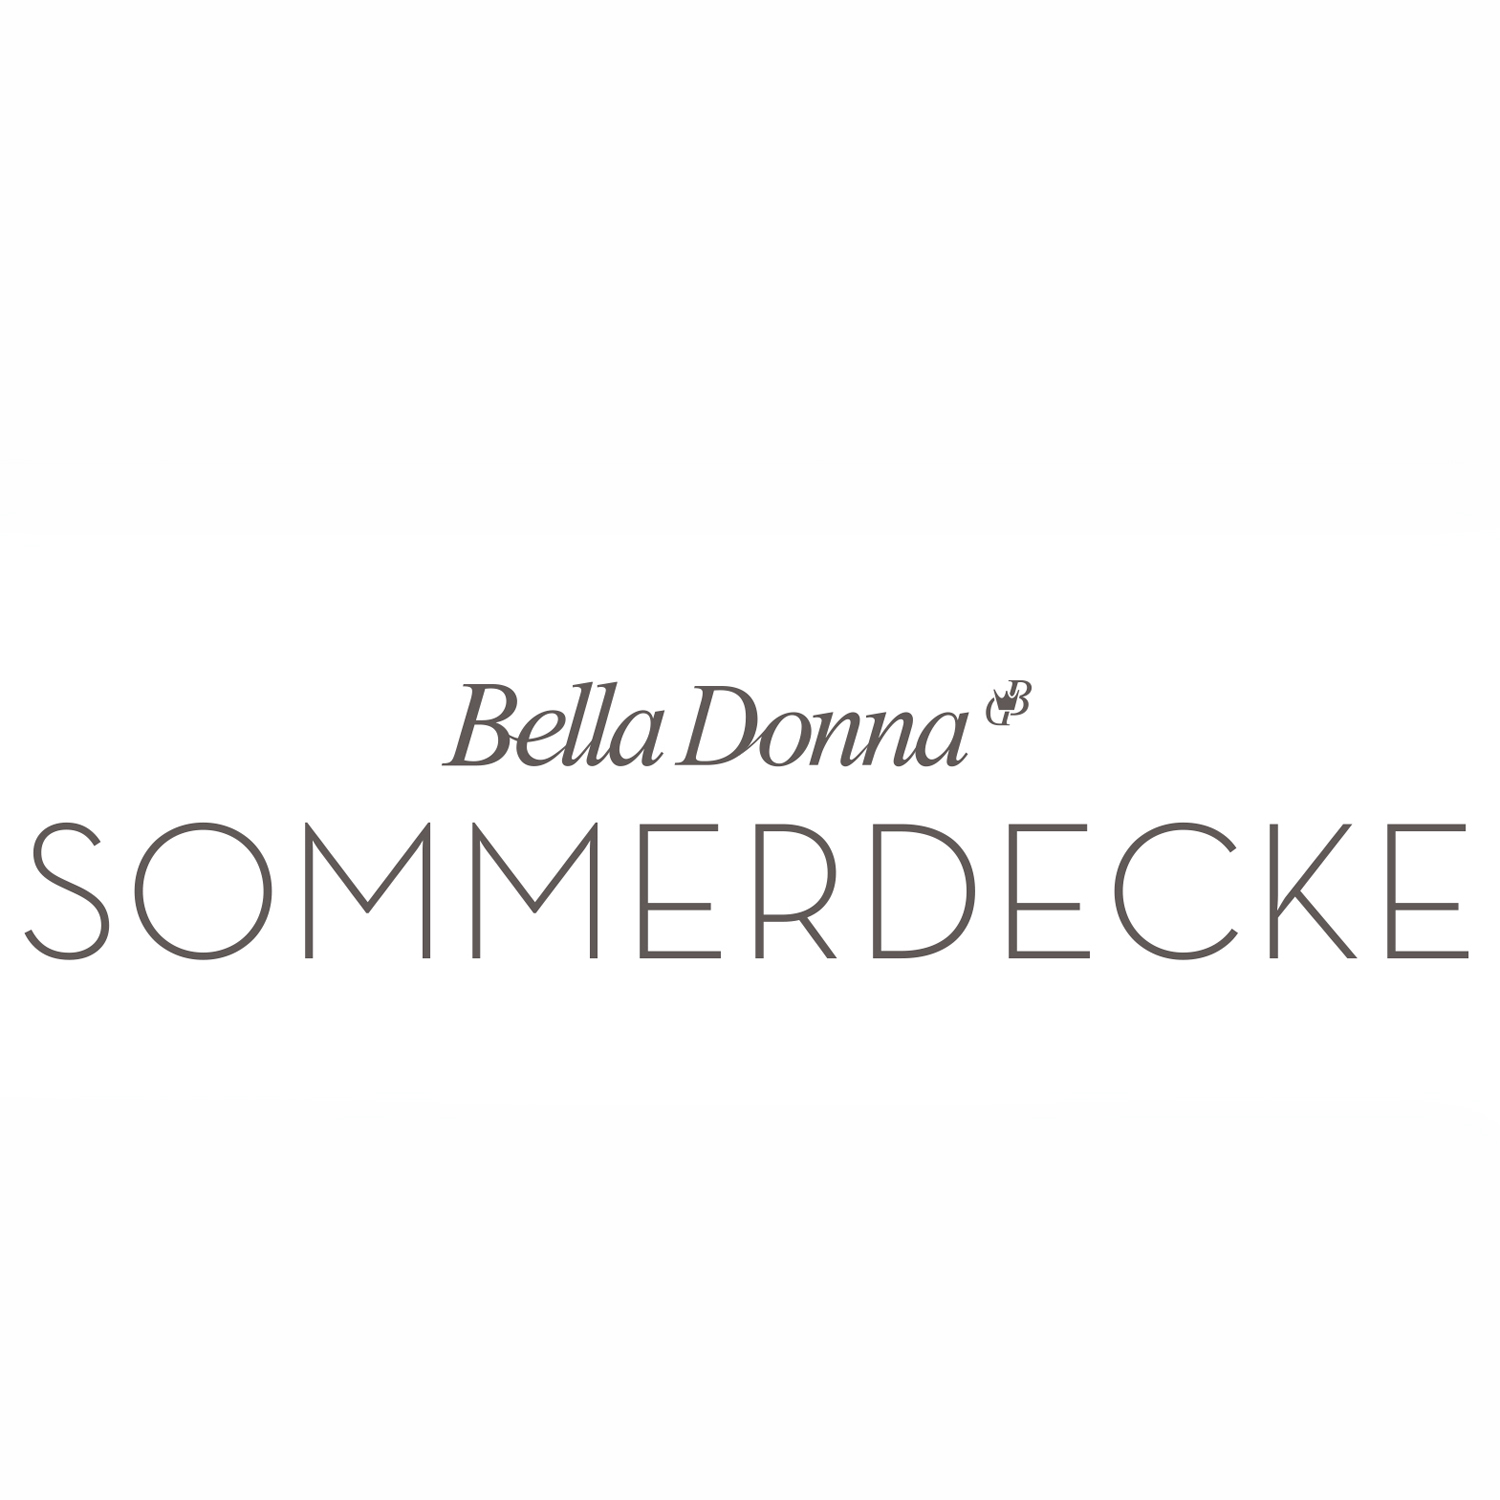 FORMESSE Sommerdecke Bella Donna hellanthrazit 220x260cm